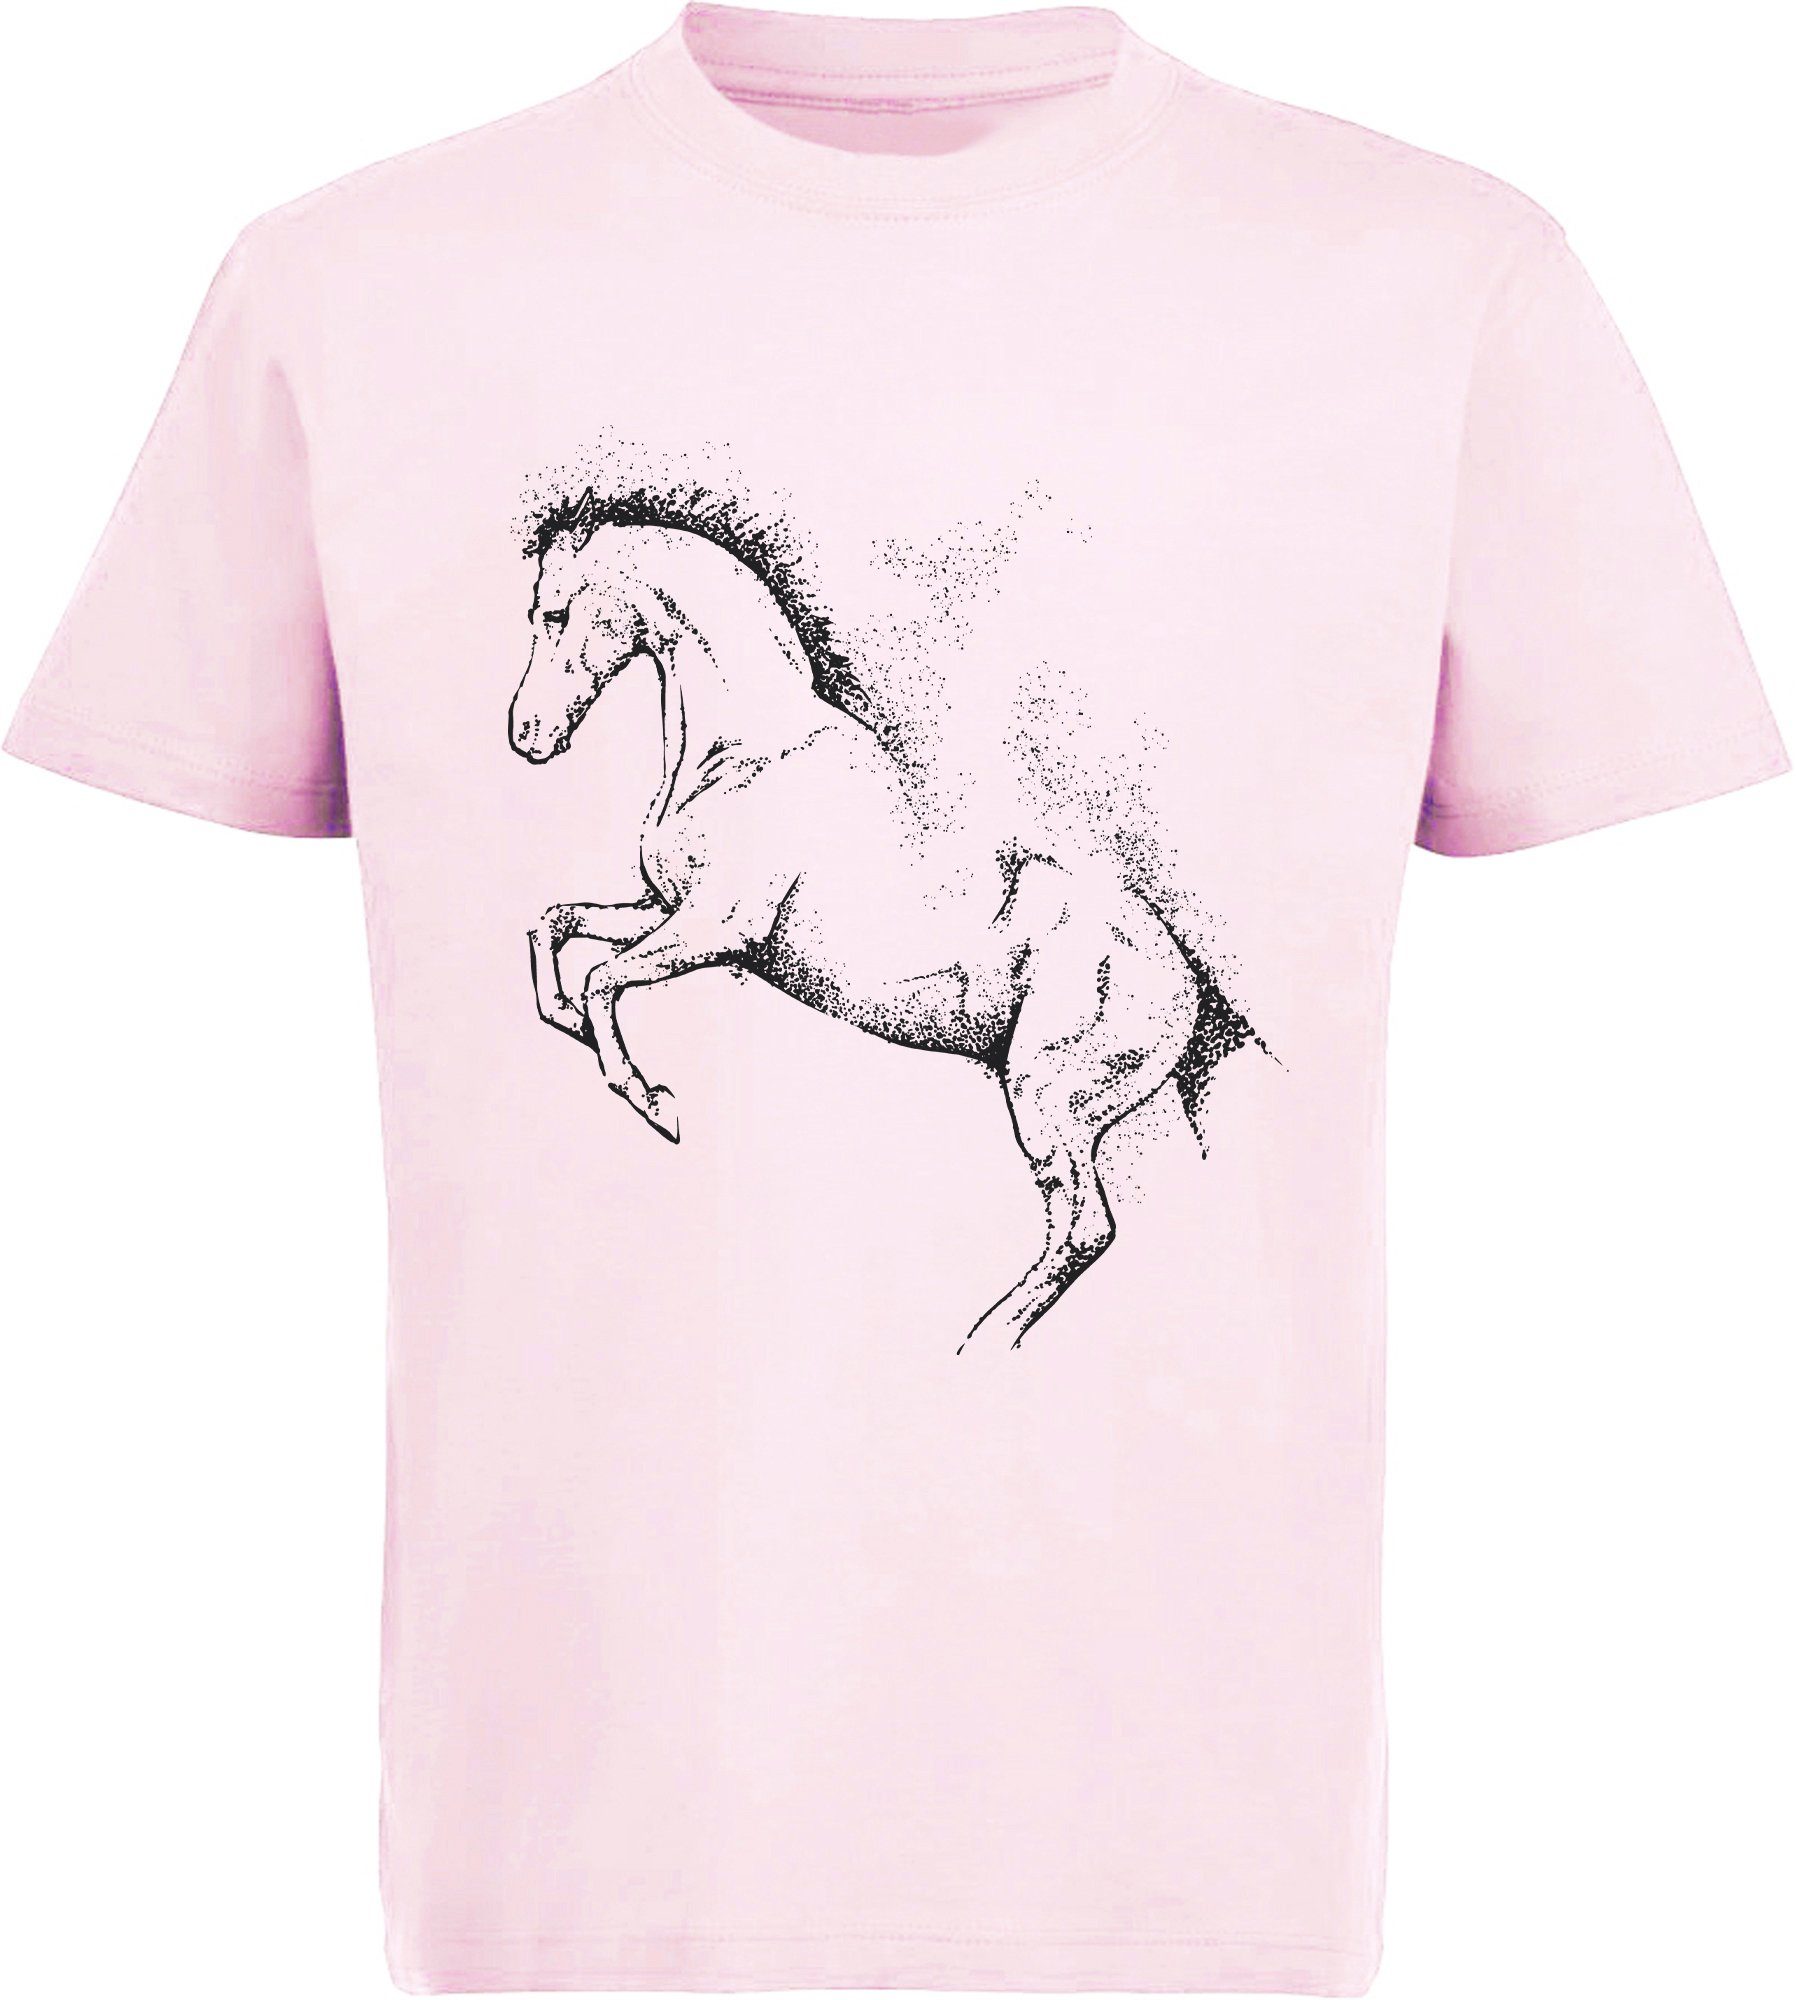 MyDesign24 Print-Shirt bedrucktes Kinder Mädchen T-Shirt - Gepunktete Pferde Silhouette Baumwollshirt mit Aufdruck, i196 rosa